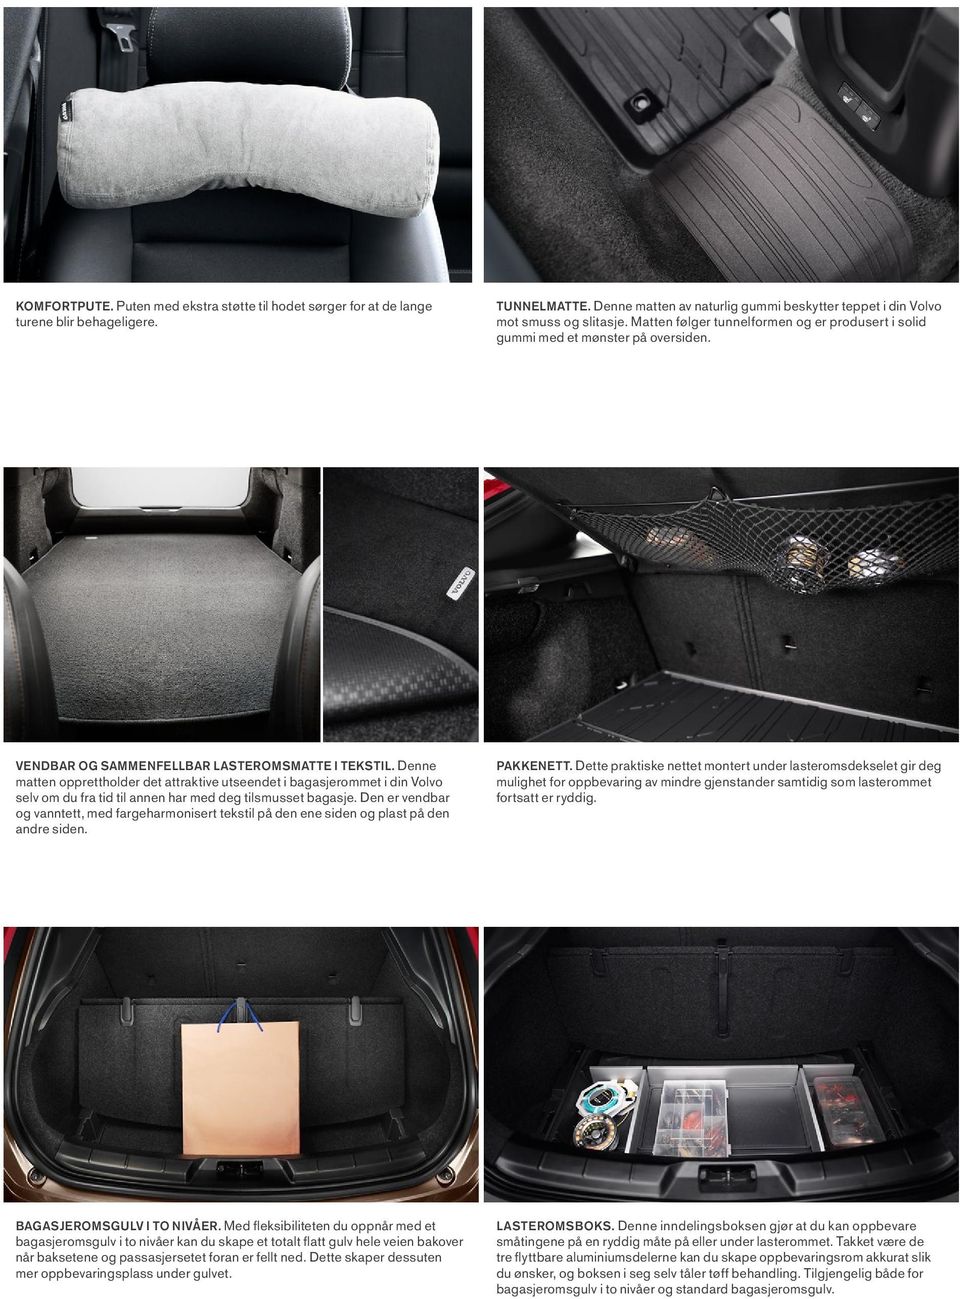 Denne matten opprettholder det attraktive utseendet i bagasjerommet i din Volvo selv om du fra tid til annen har med deg tilsmusset bagasje.